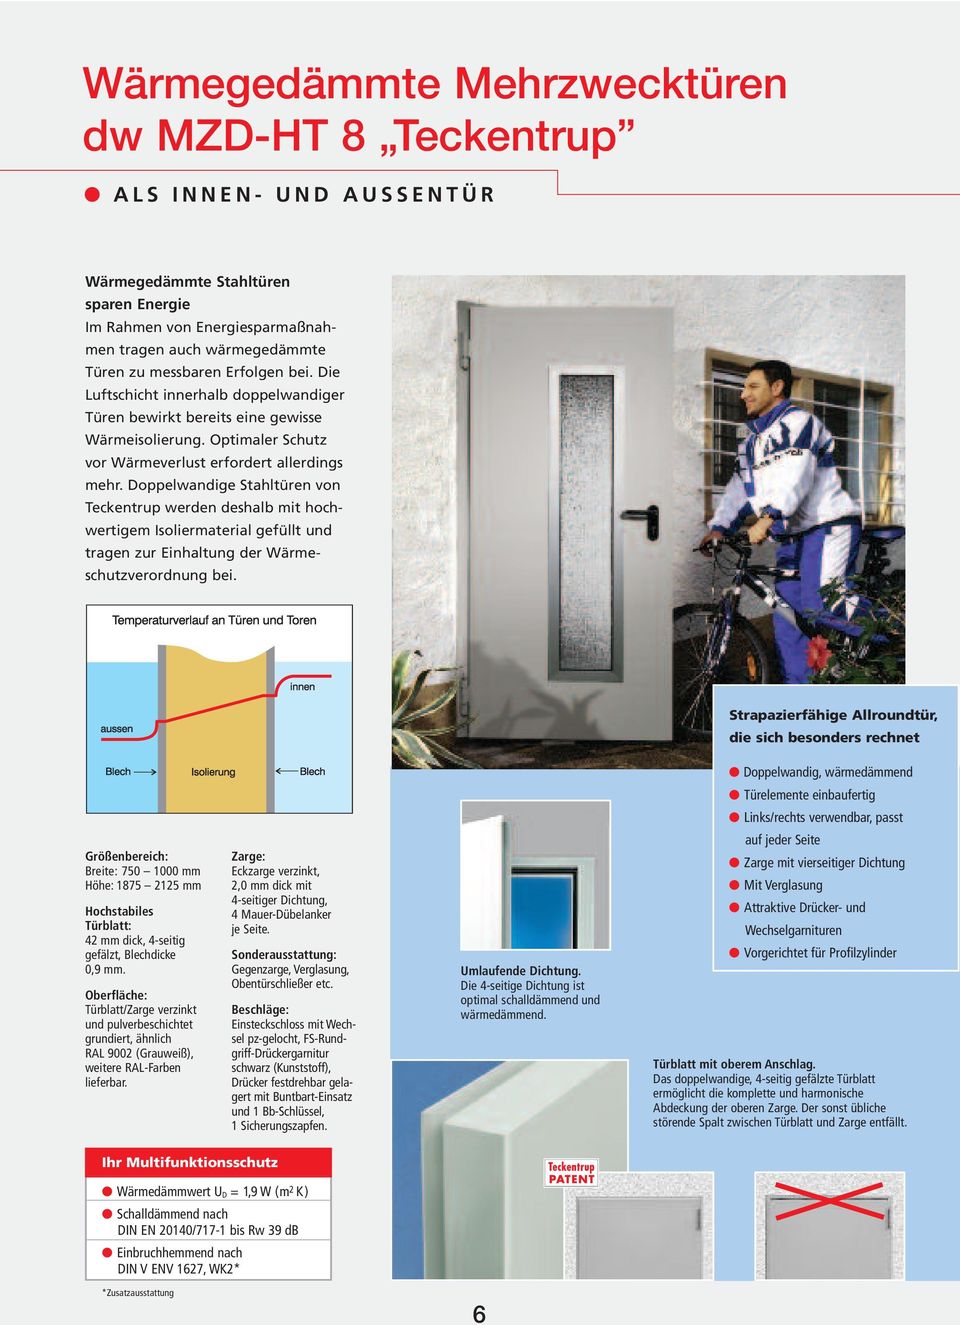 Doppelwandige Stahltüren von Teckentrup werden deshalb mit hochwertigem Isoliermaterial gefüllt und tragen zur Einhaltung der Wärmeschutzverordnung bei.